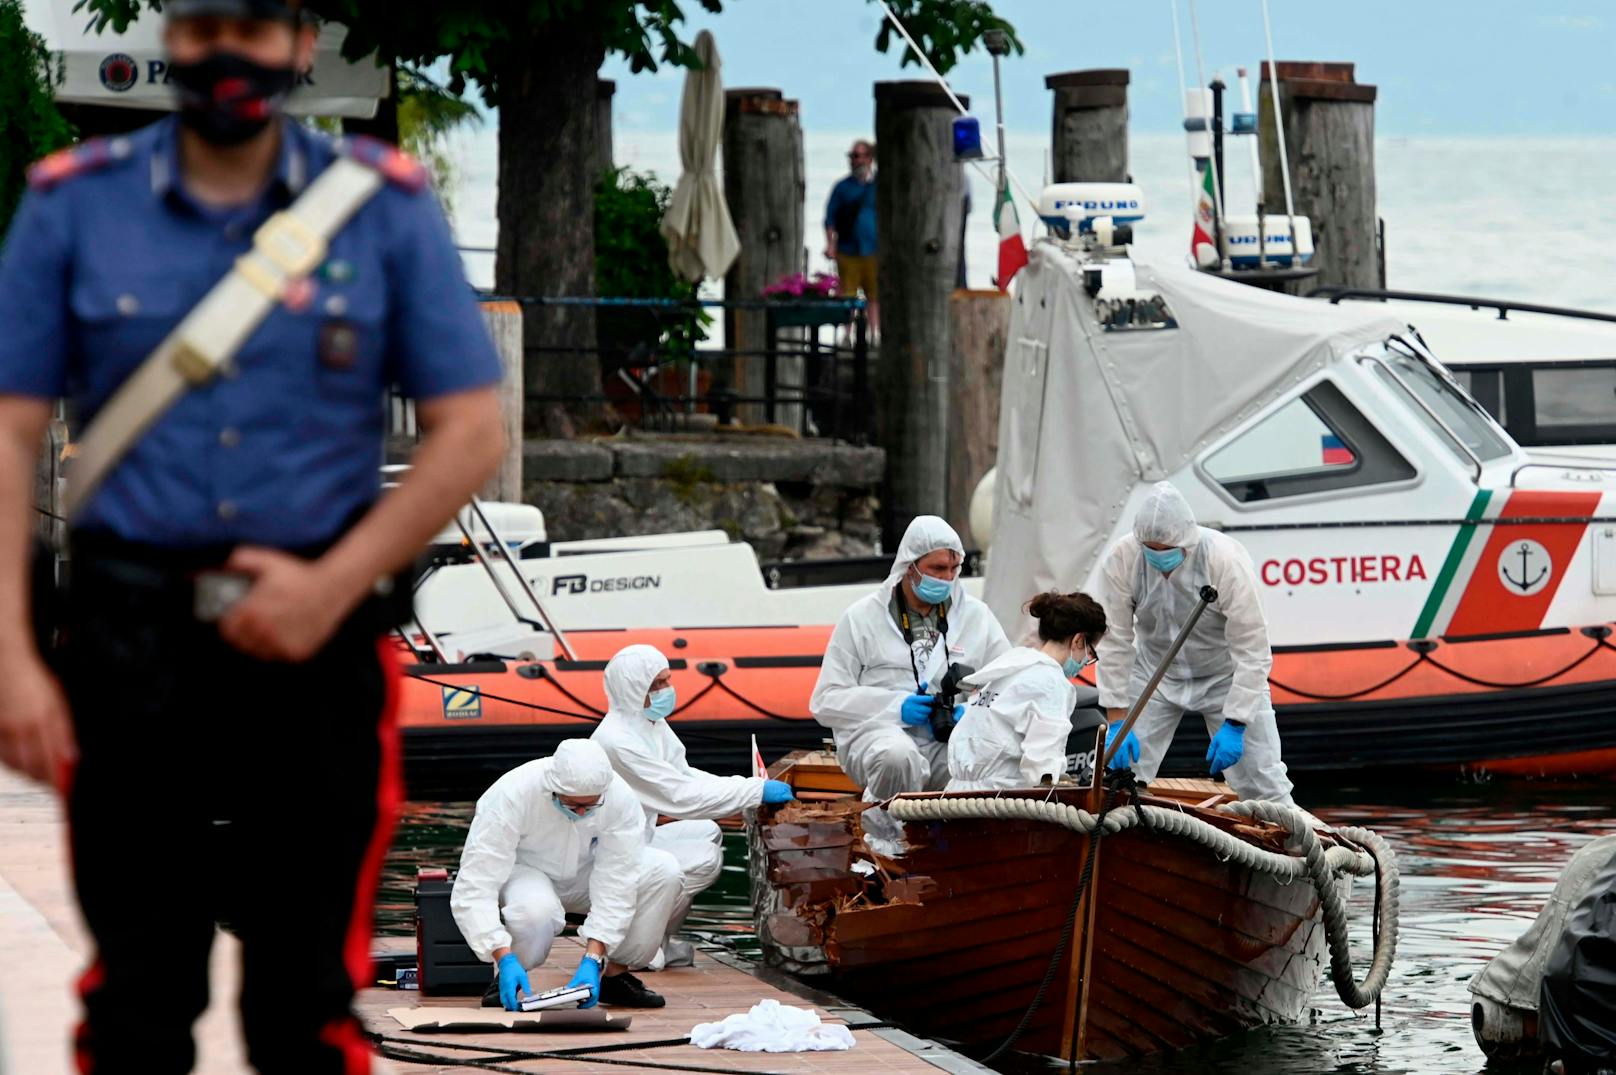 Die italienische Forensiker untersuchen den Schaden an dem Boot, auf dem ein italienisches Paar ums Leben kam.